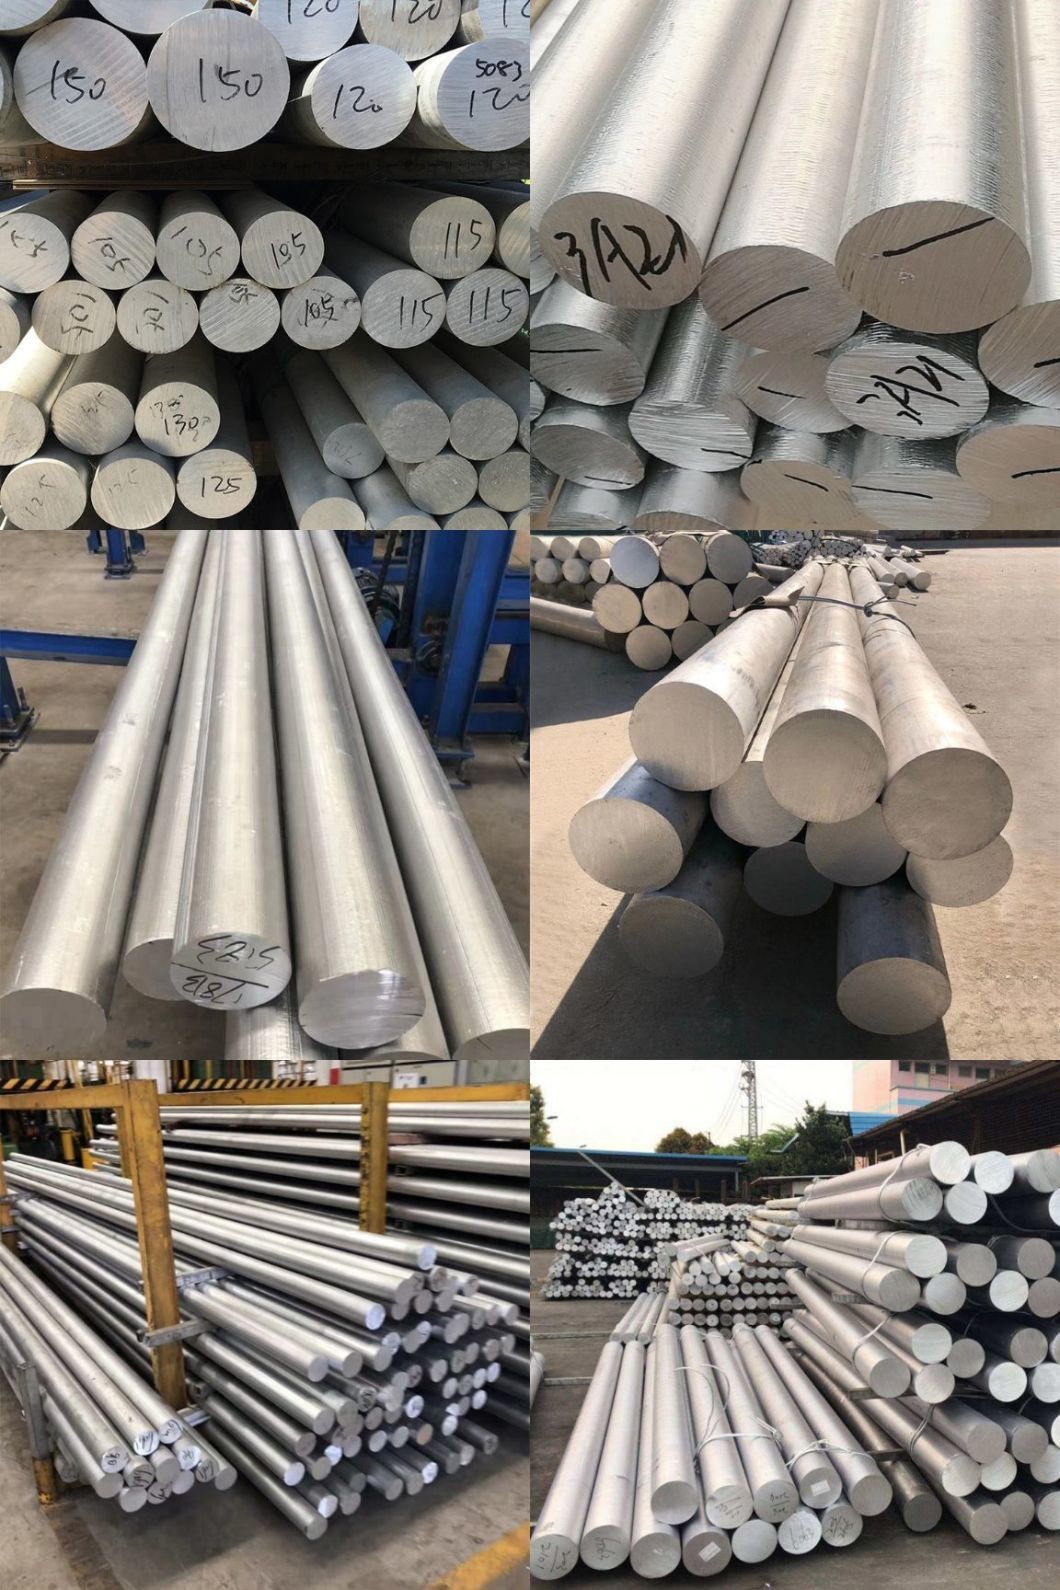 Aluminium Manufacturer 2A11 2024 3003 5052 5083 6061 6063 7075 Alloy Aluminum Rod Aluminium Round Bars